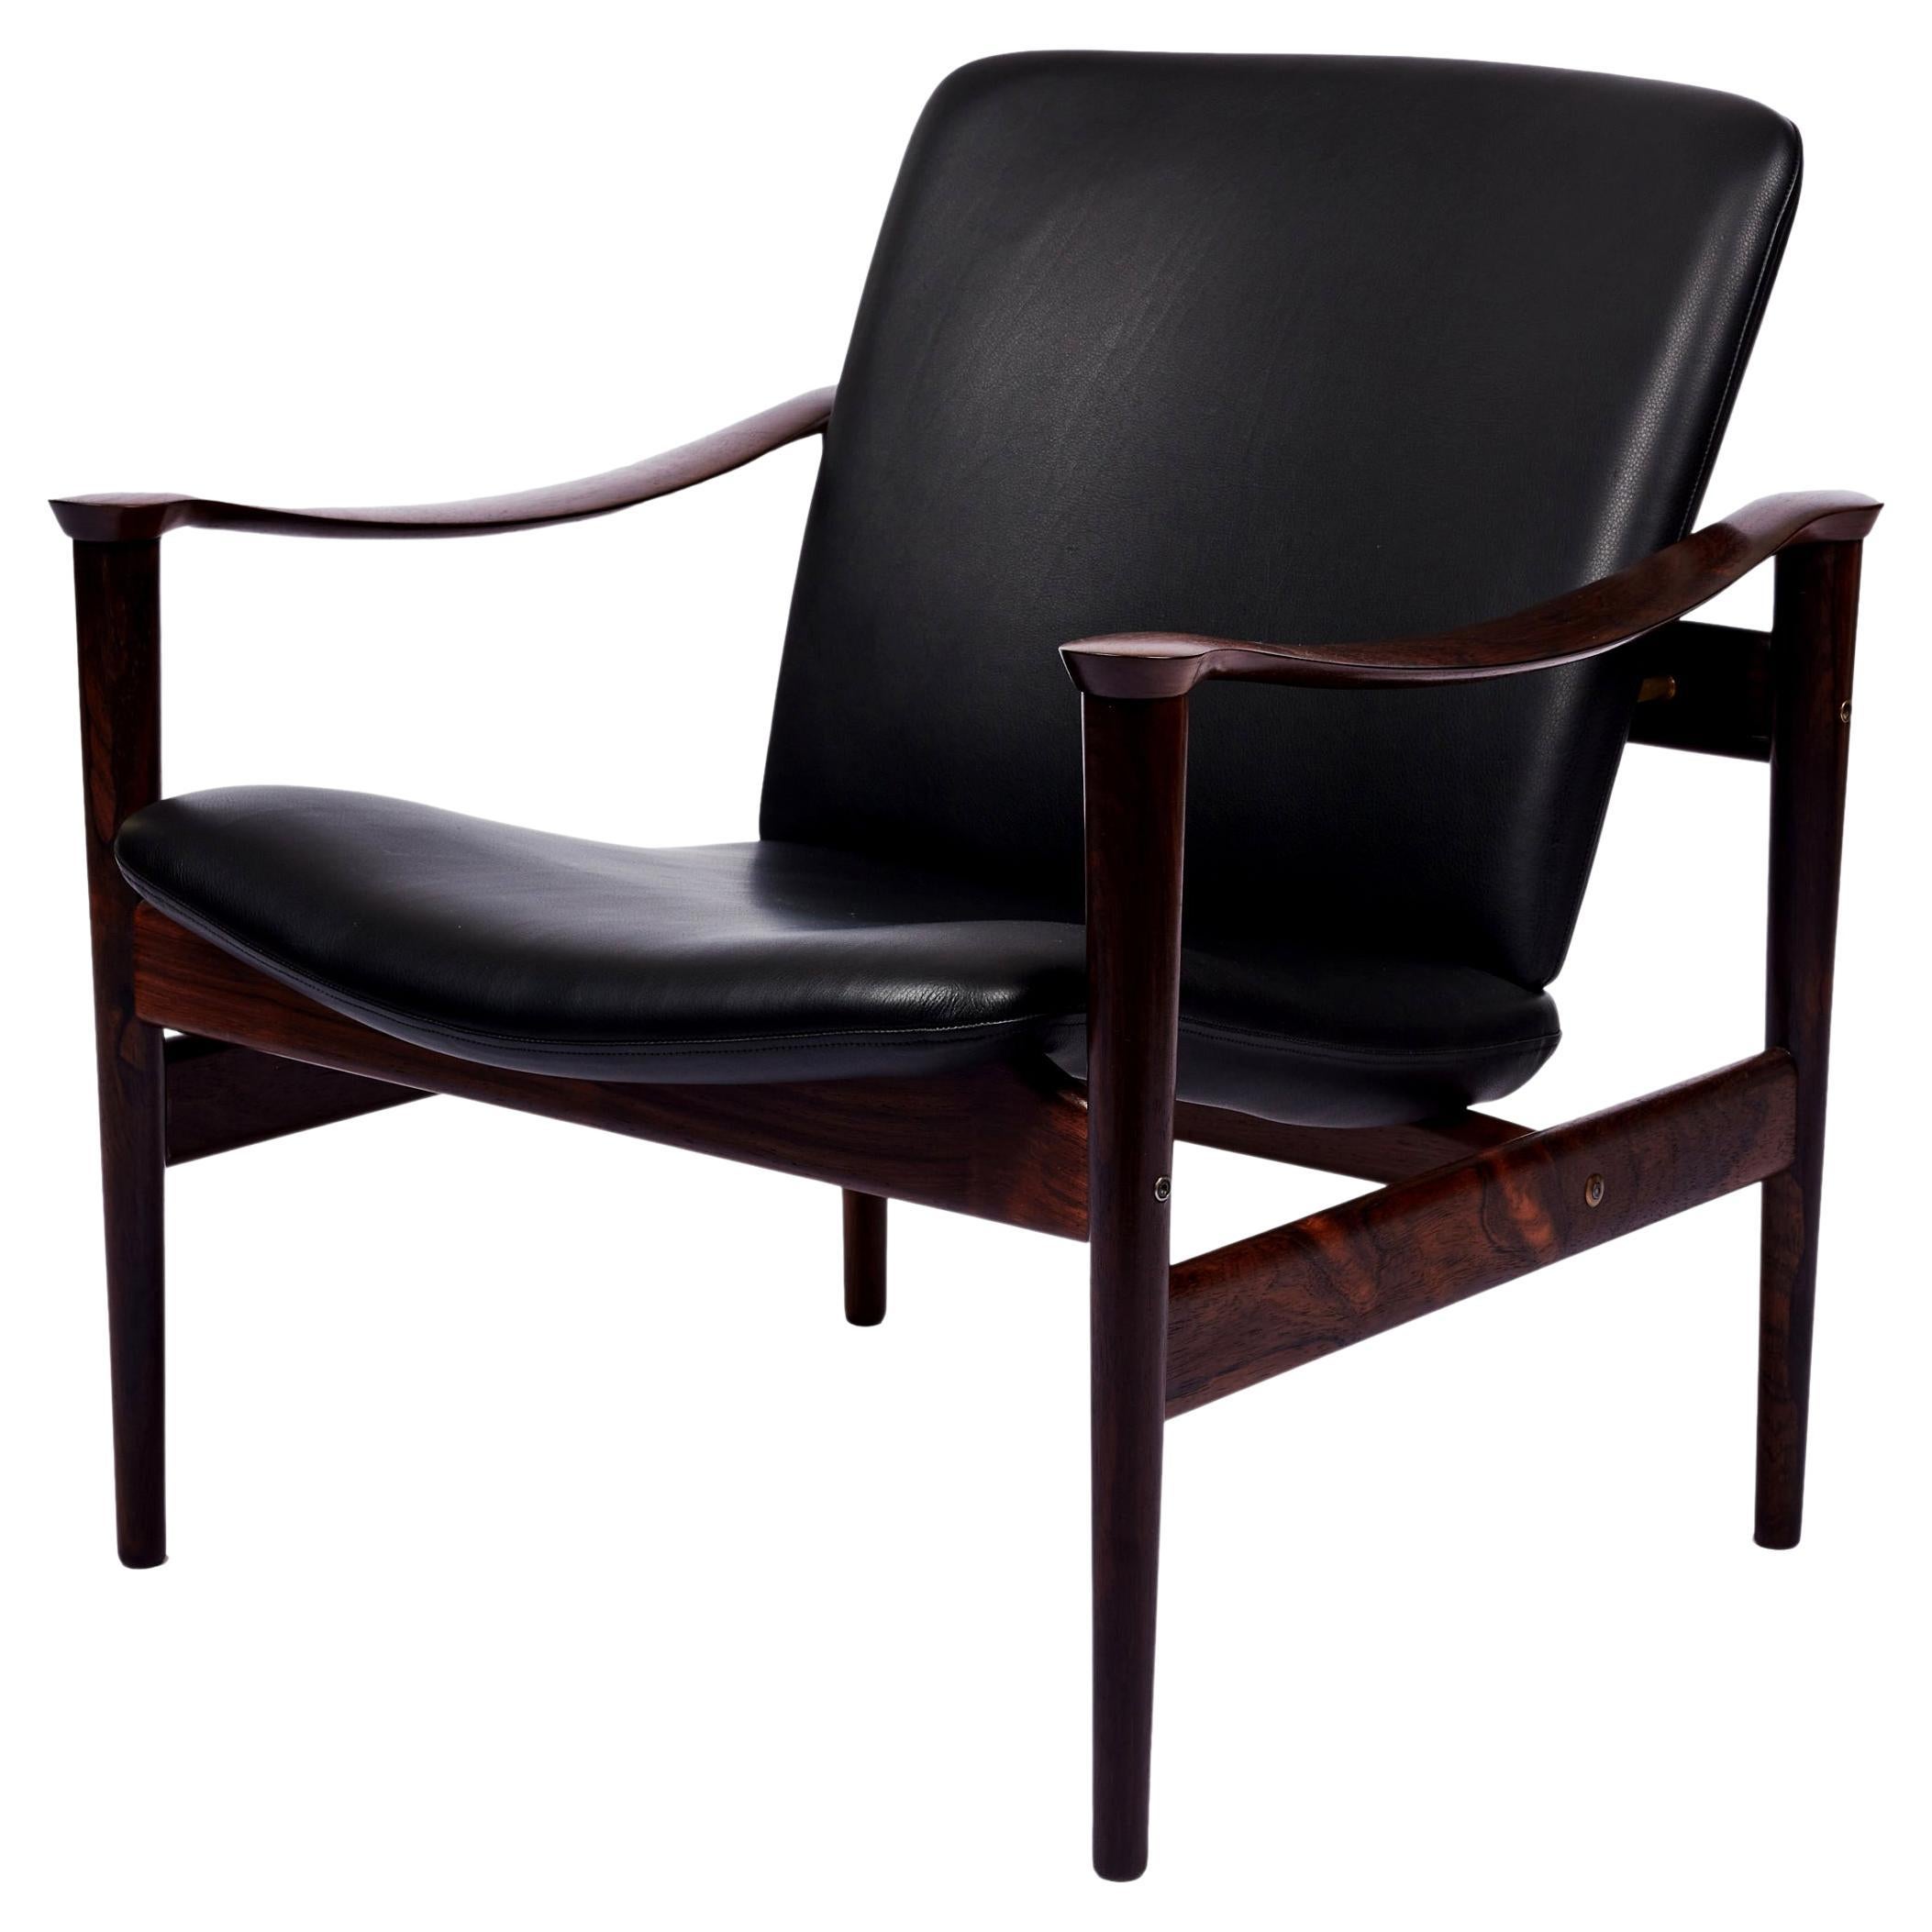 Fredrik Kayser Rosewood Lounge Chair